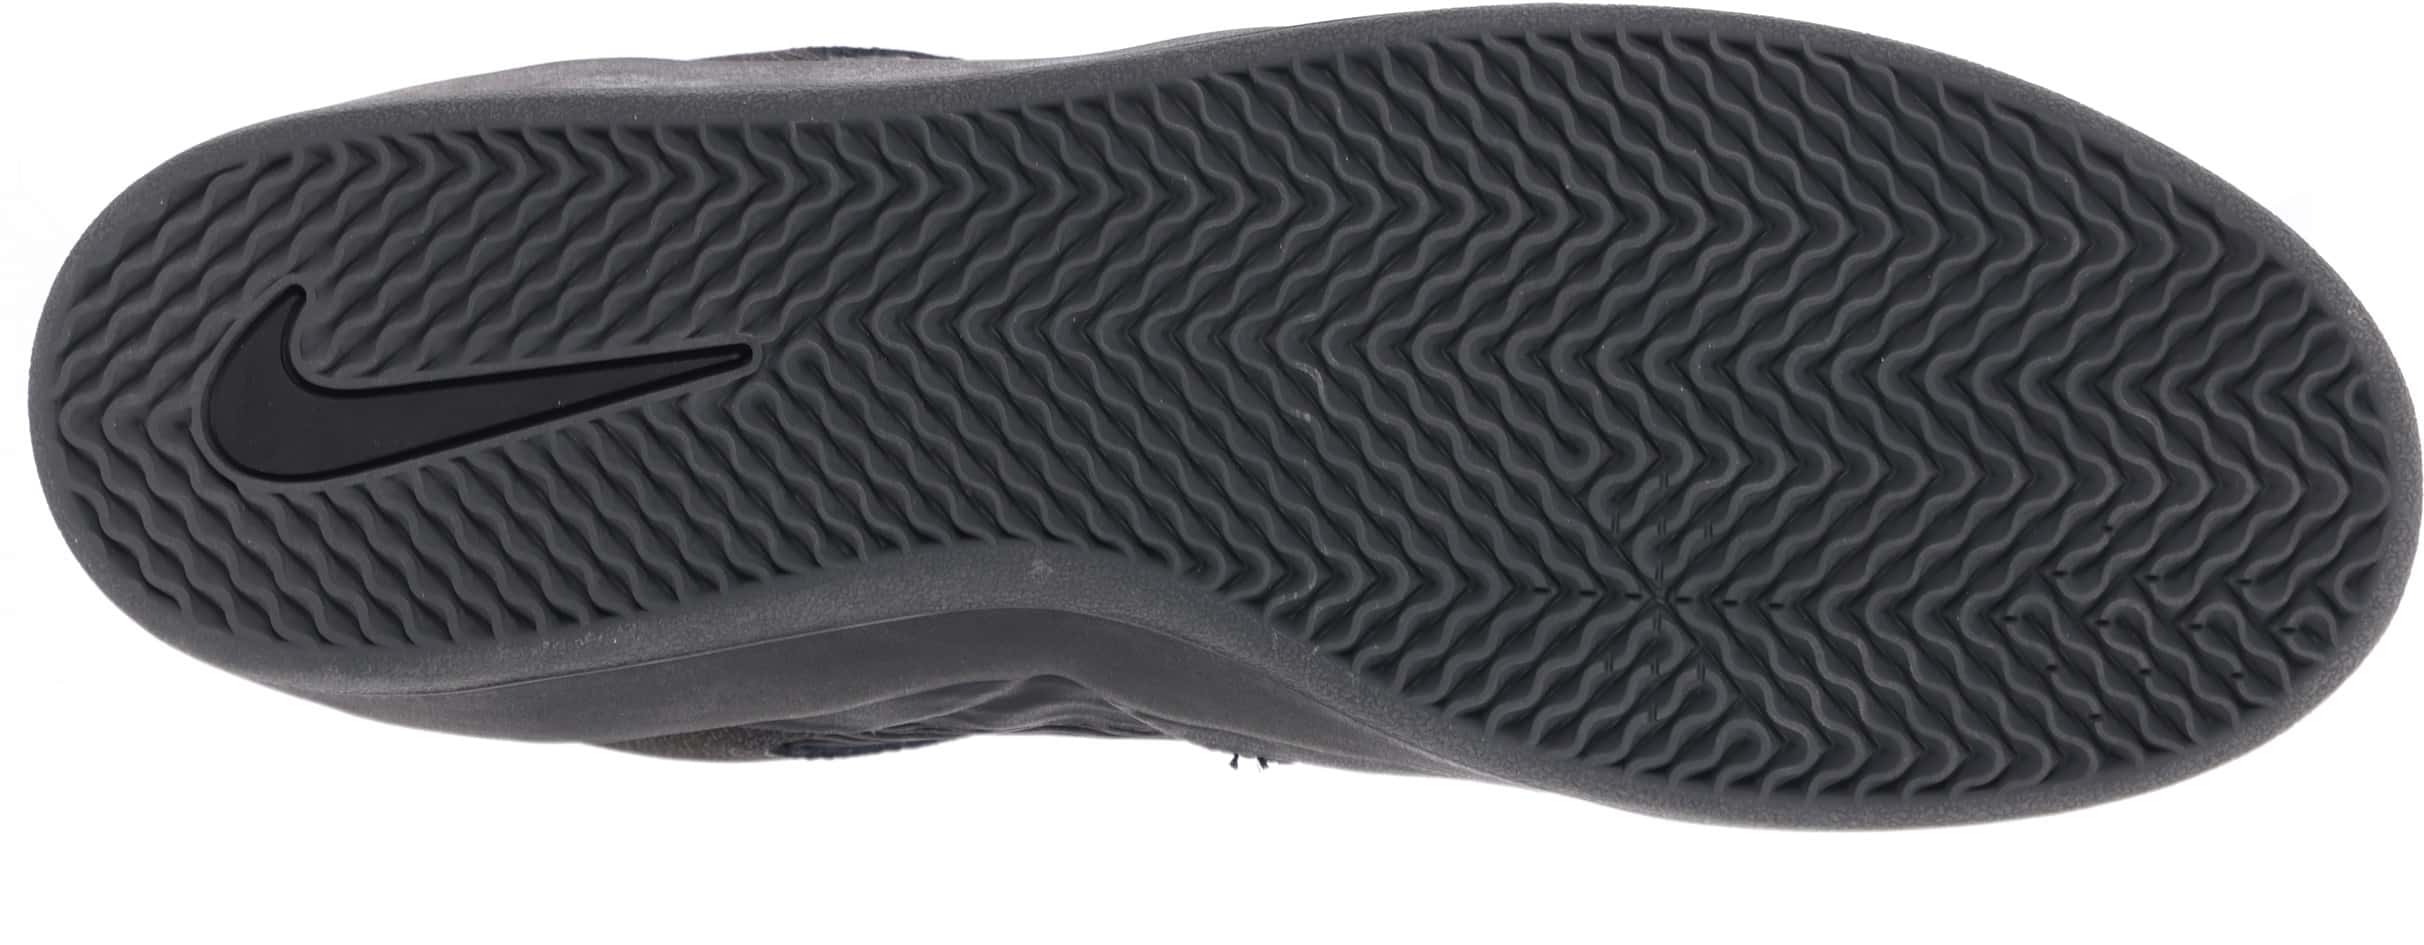 Nike SB Ishod Wair PRM Skate Shoes - black/black-black-black | Tactics